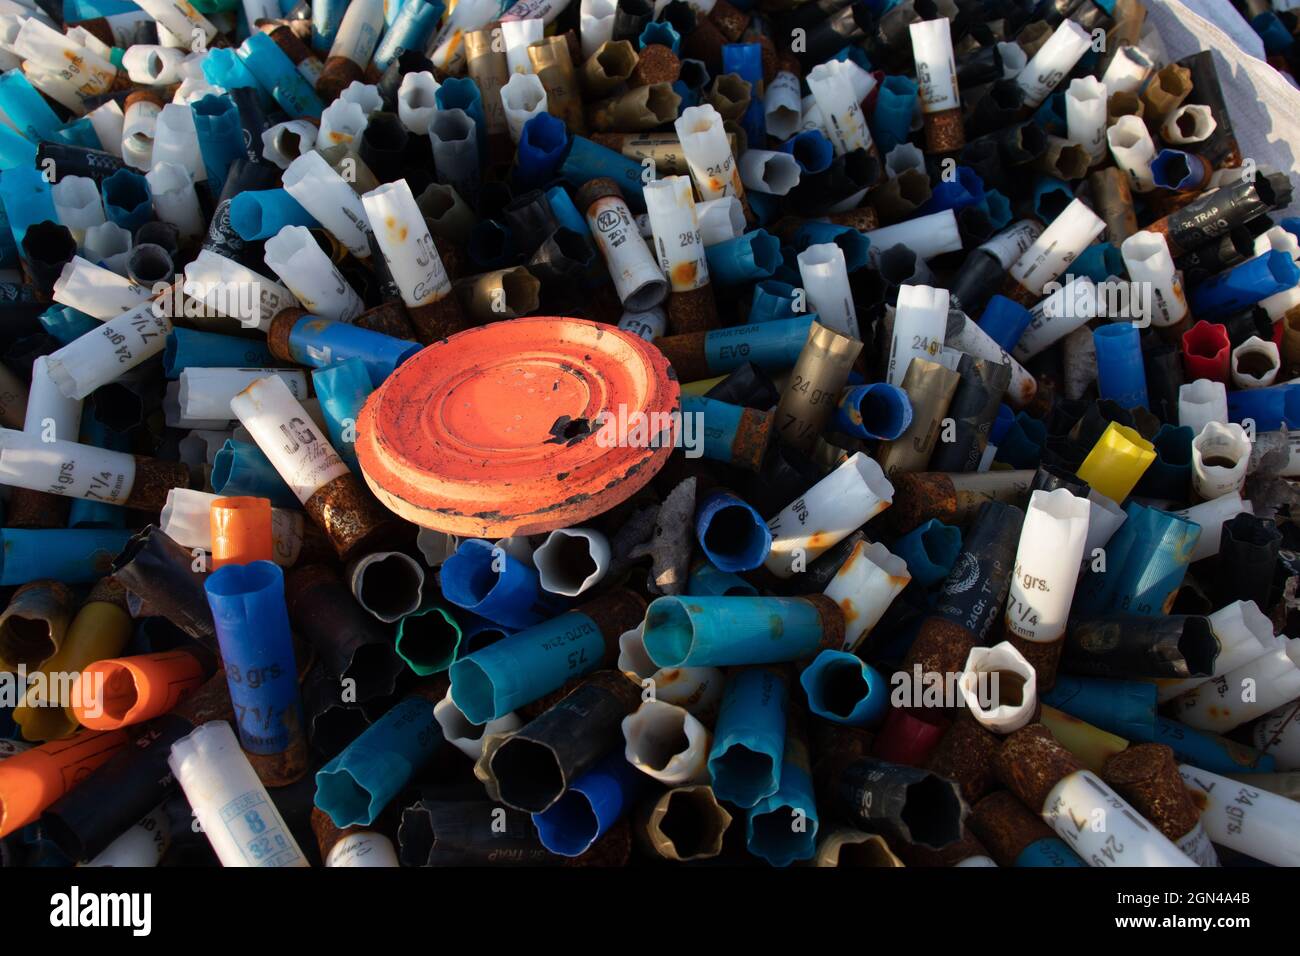 Closeup shot of a pile of spent cartridges Stock Photo